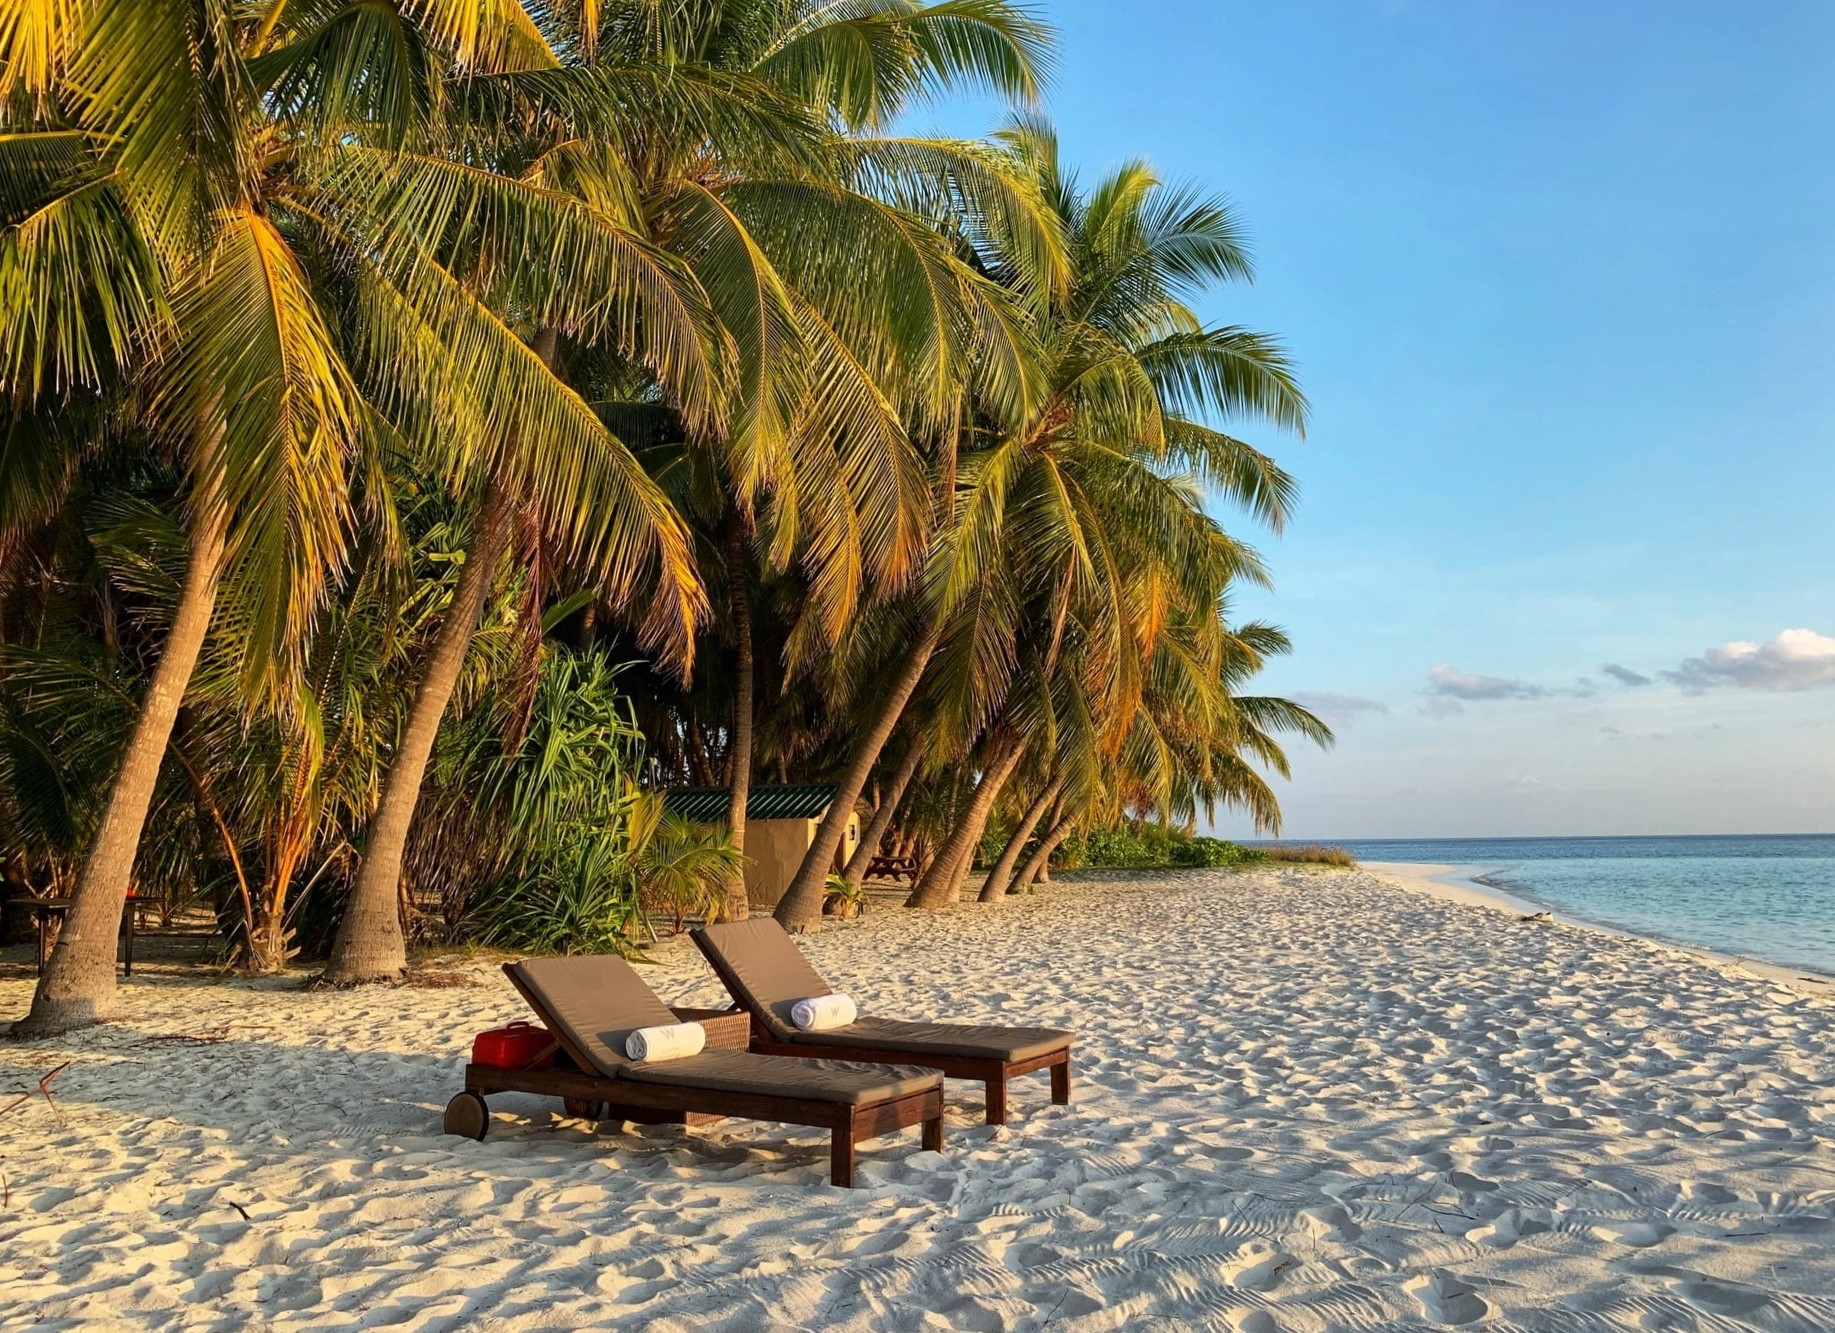 Découvrez nos séjours de luxe en vente privée - Maldives. VeryChic vous propose des voyages jusqu’à -70% dans les plus beaux hôtels du monde - Maldives